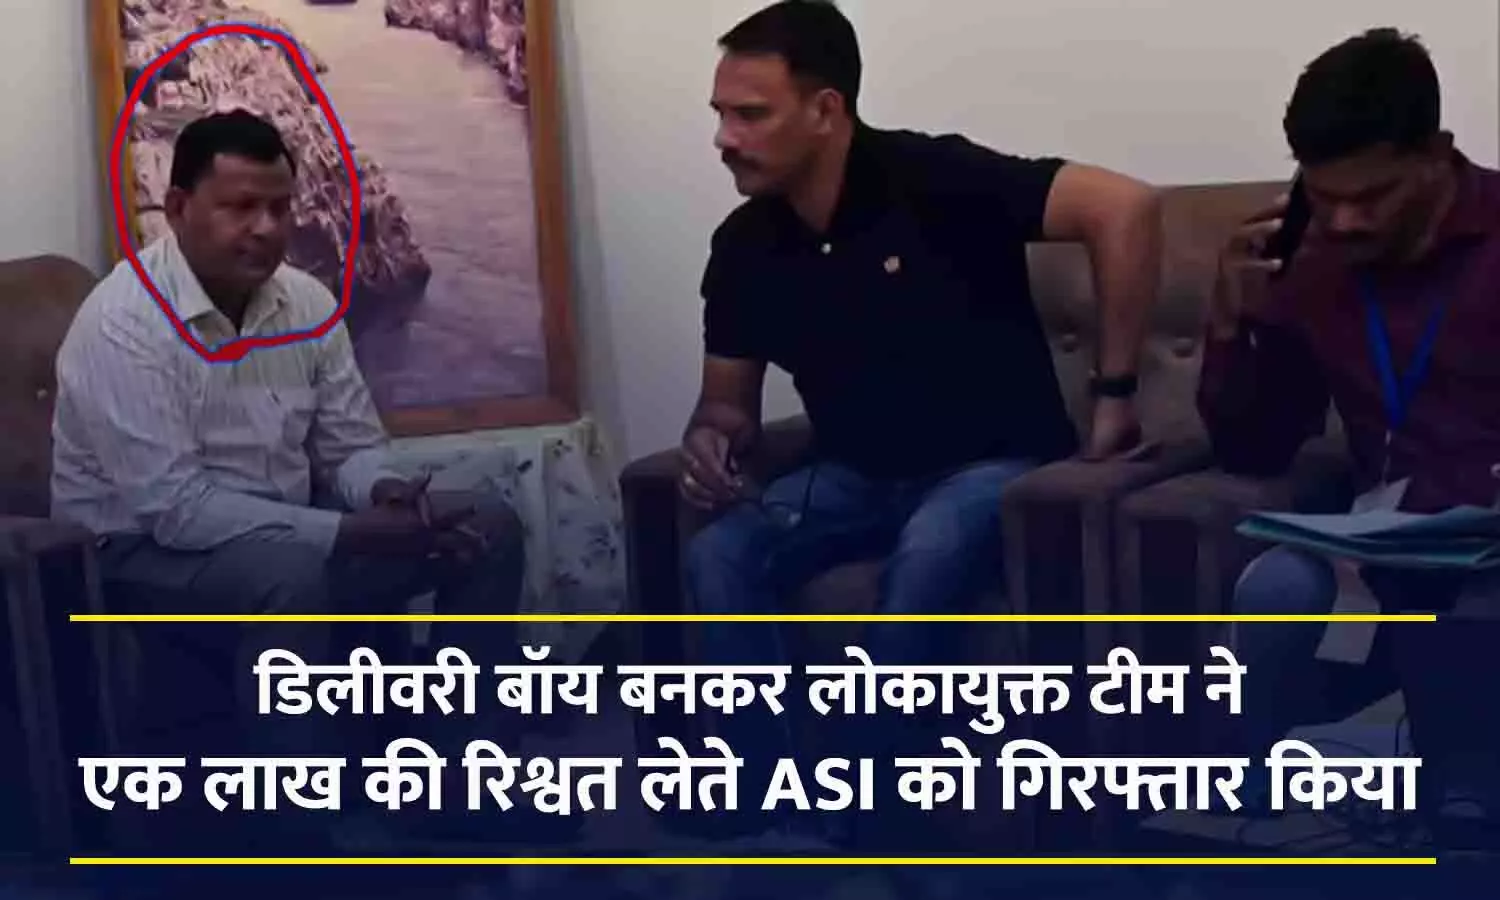 जबलपुर में STF ASI रिश्वत लेते गिरफ्तार: 1 लाख की रिश्वत मांगने पर कार्रवाई, लोकायुक्त टीम ने डिलीवरी बॉय बनकर दबोचा